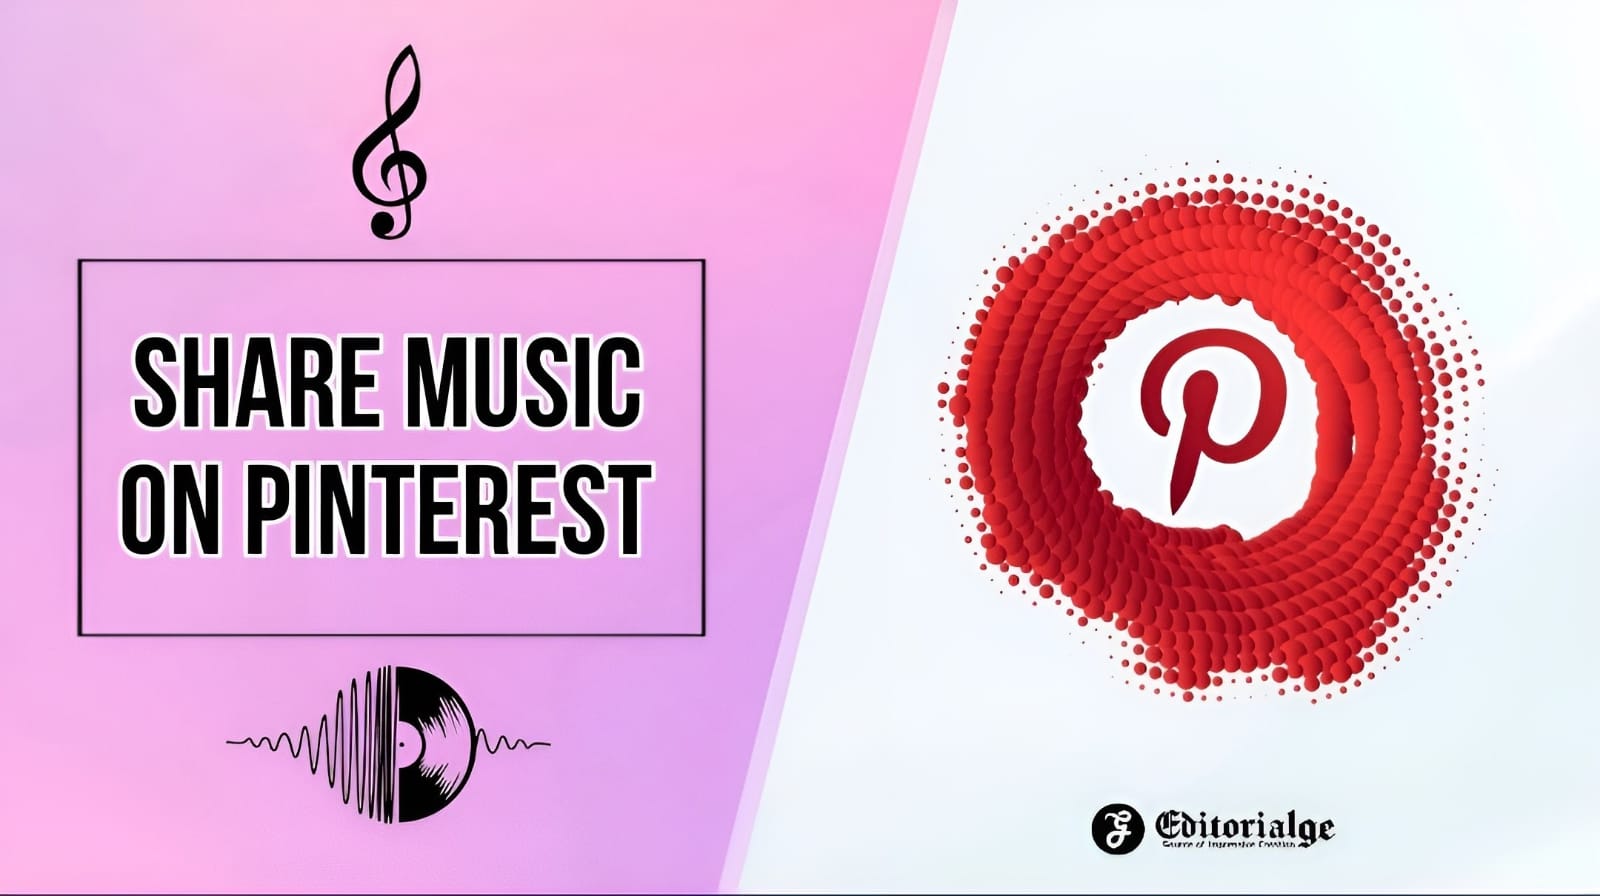 Share music on pinterest